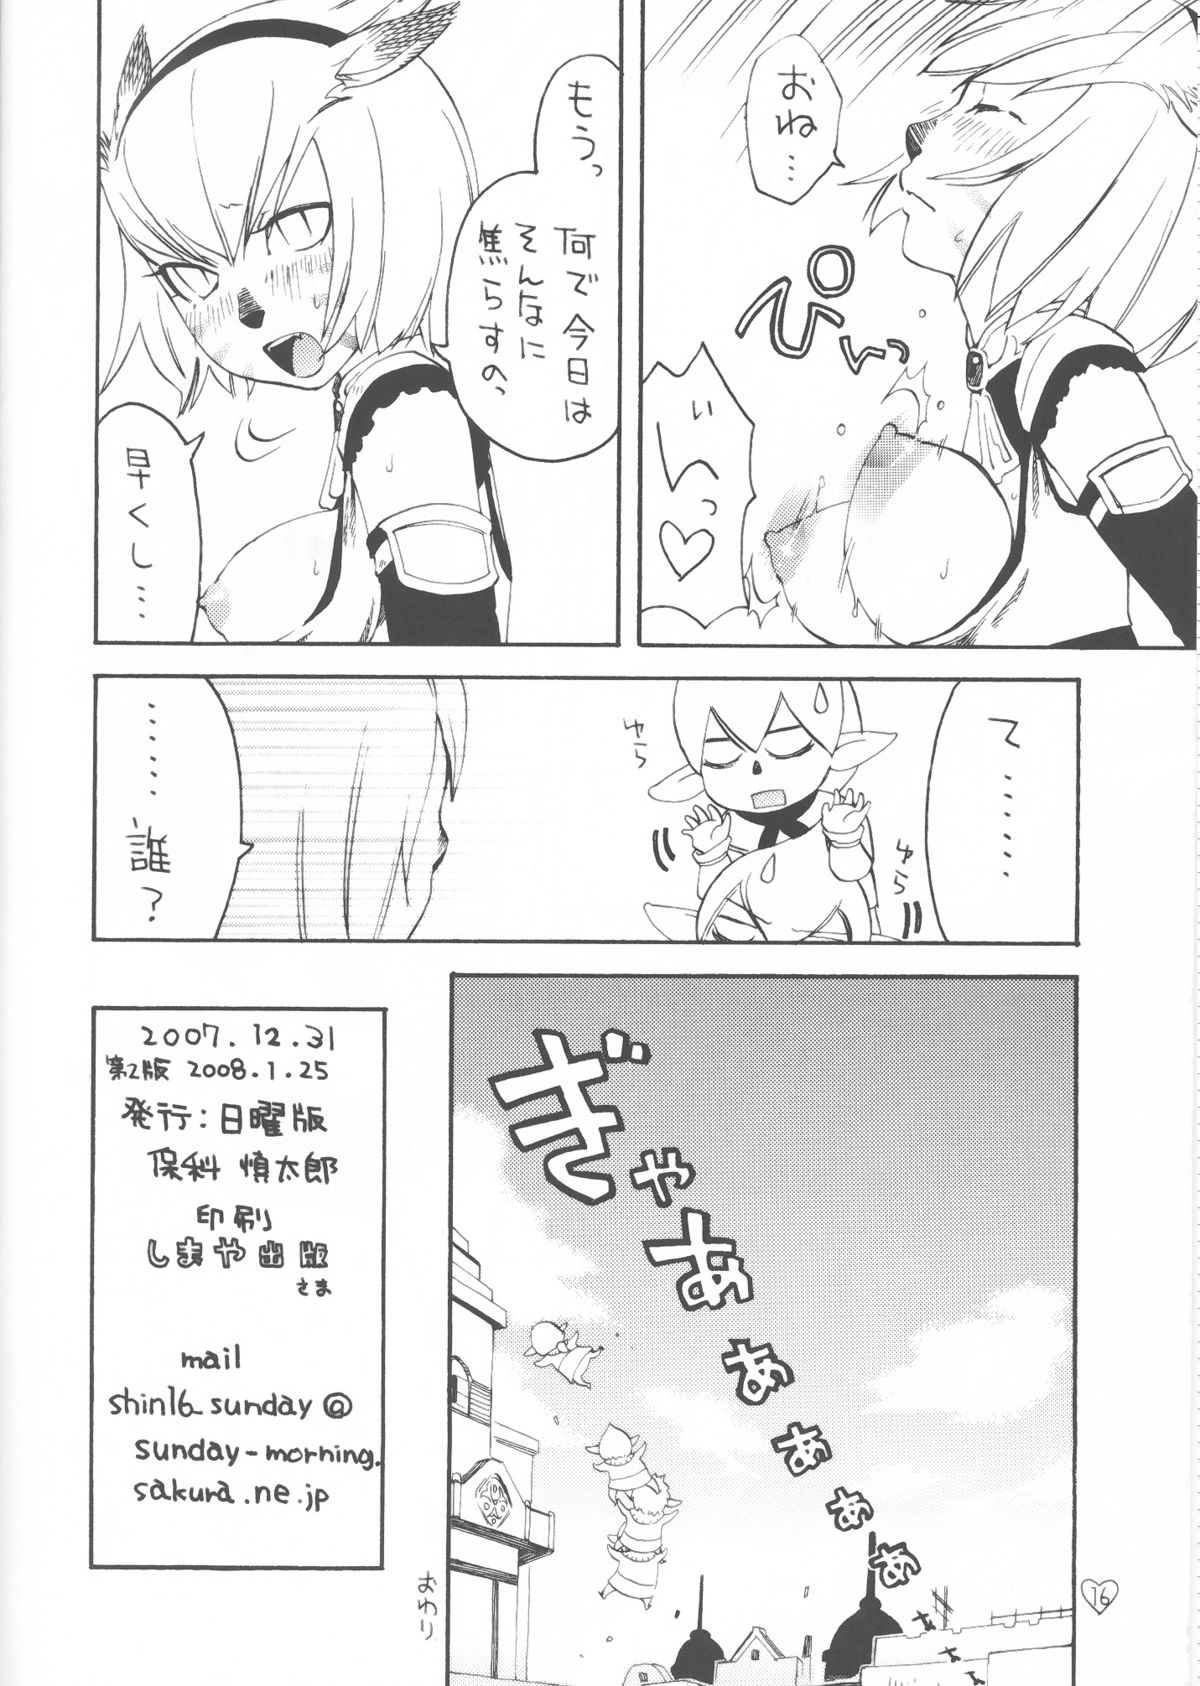 [Nichiyouban (Hoshina Shintarou)] Saretagatte iru (Final Fantasy XI) [2008-01-25] page 16 full